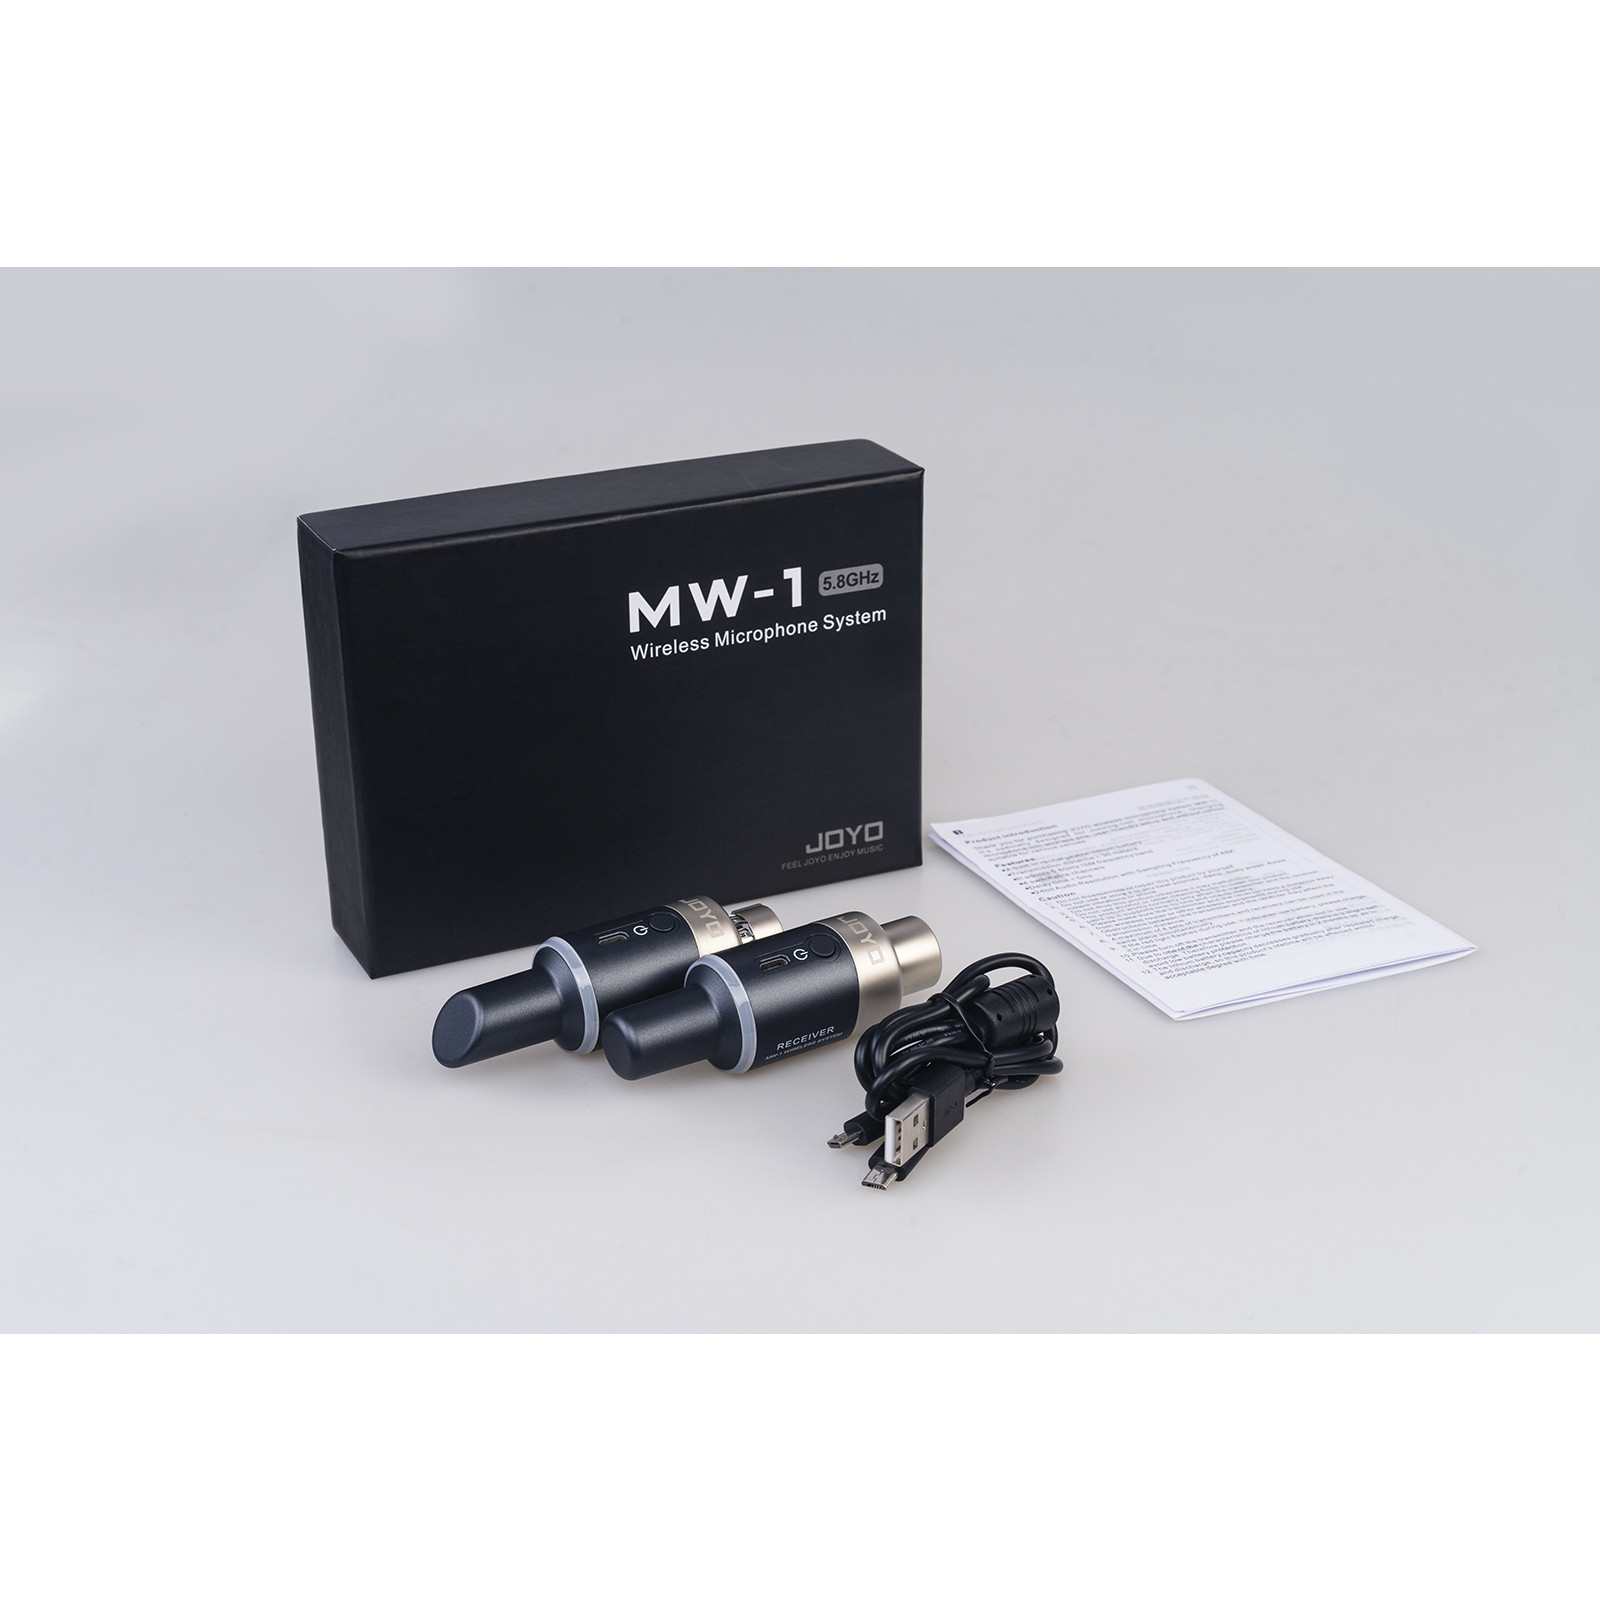 Hệ thống thu phát tín hiệu micrô không dây JOYO 5.8ghz XLR MW-1 - JOYO MW-1 Microphone wireless system - Hàng chính hãng